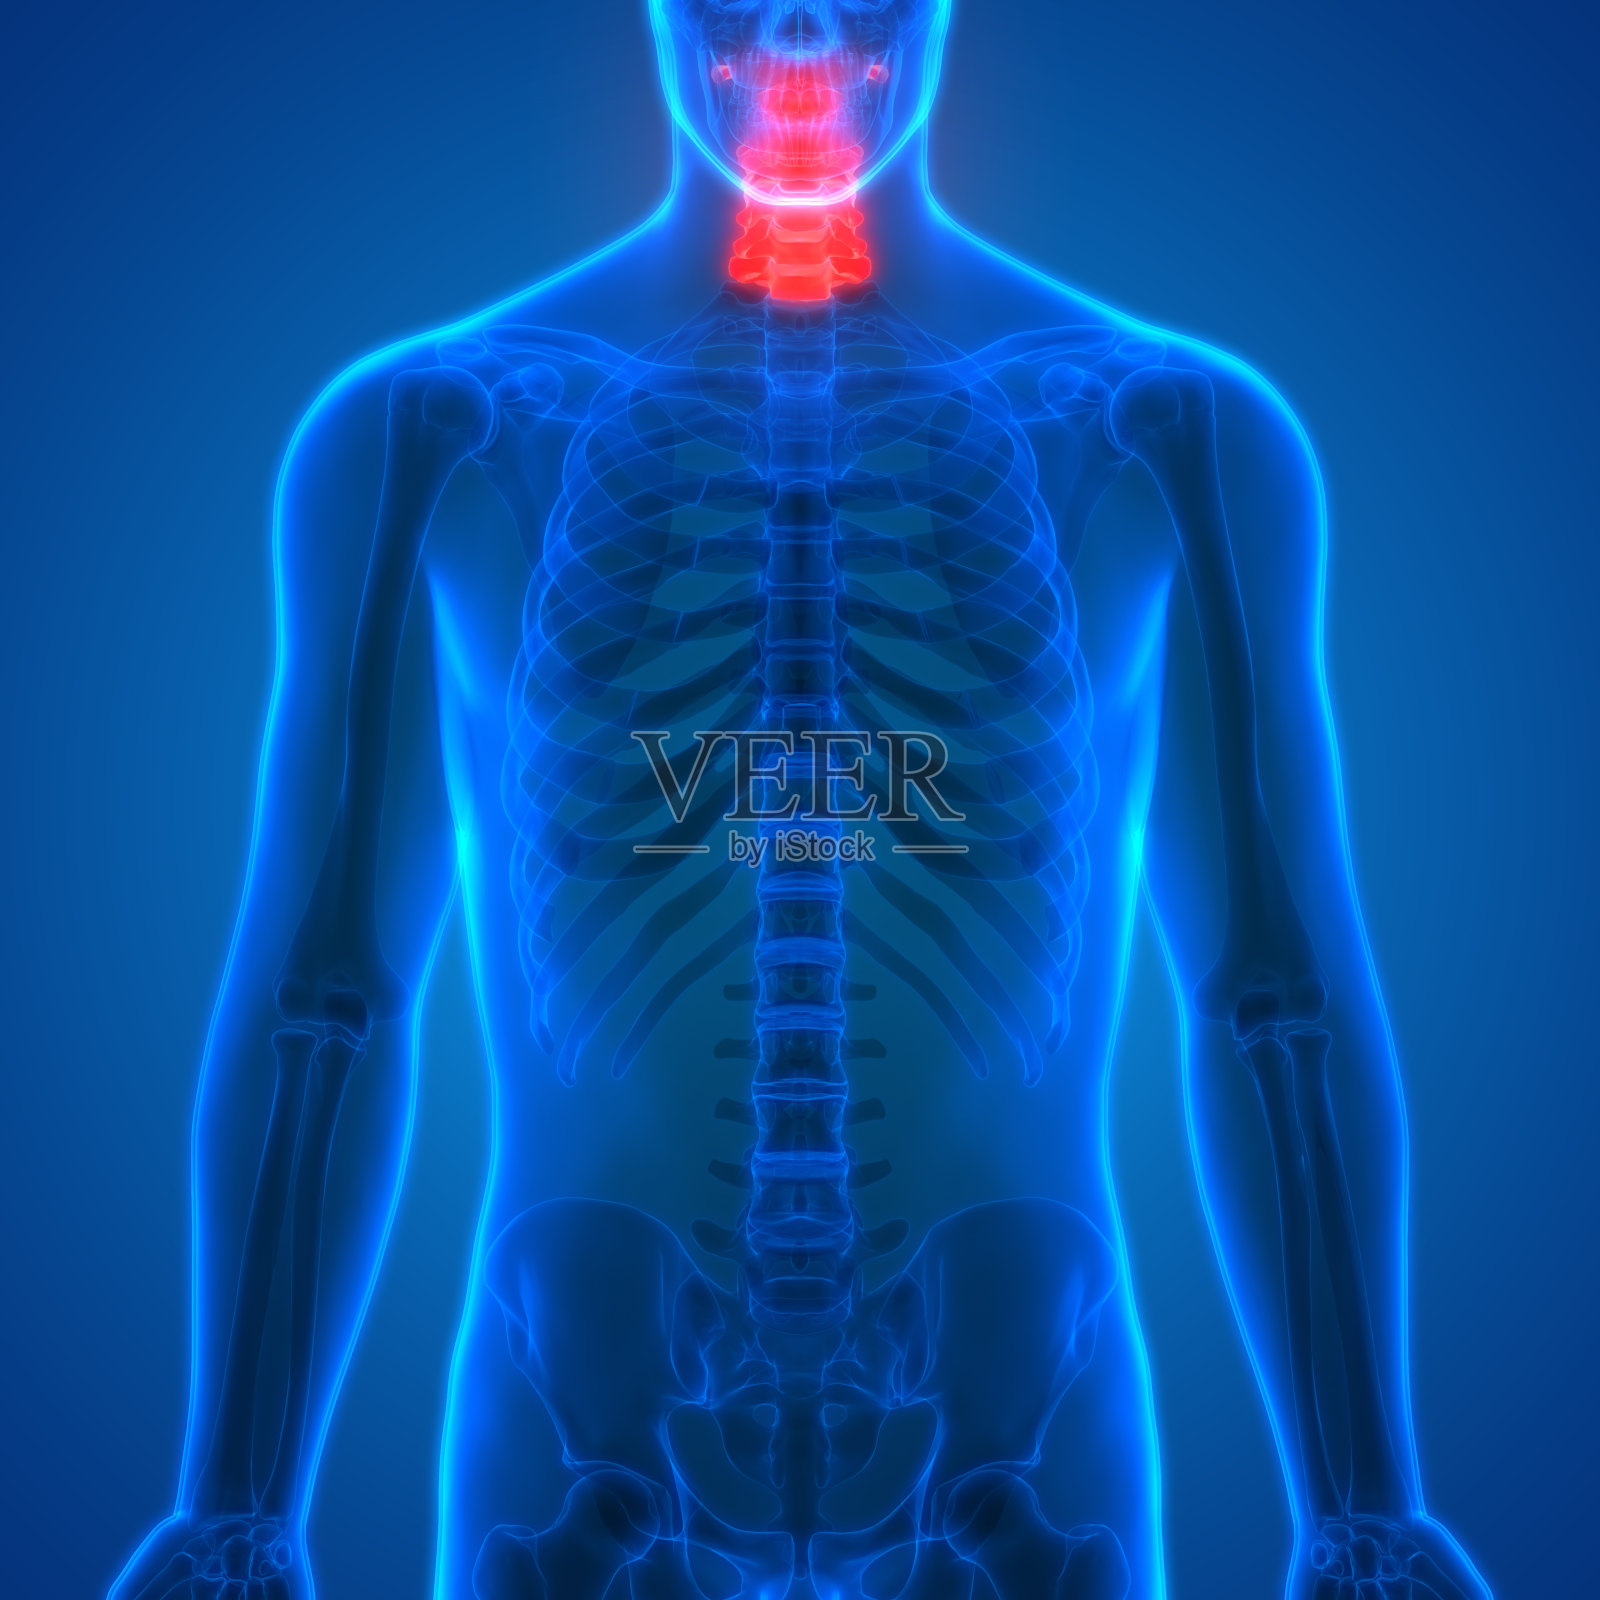 脊髓(颈椎)是人体骨骼解剖学的一部分照片摄影图片